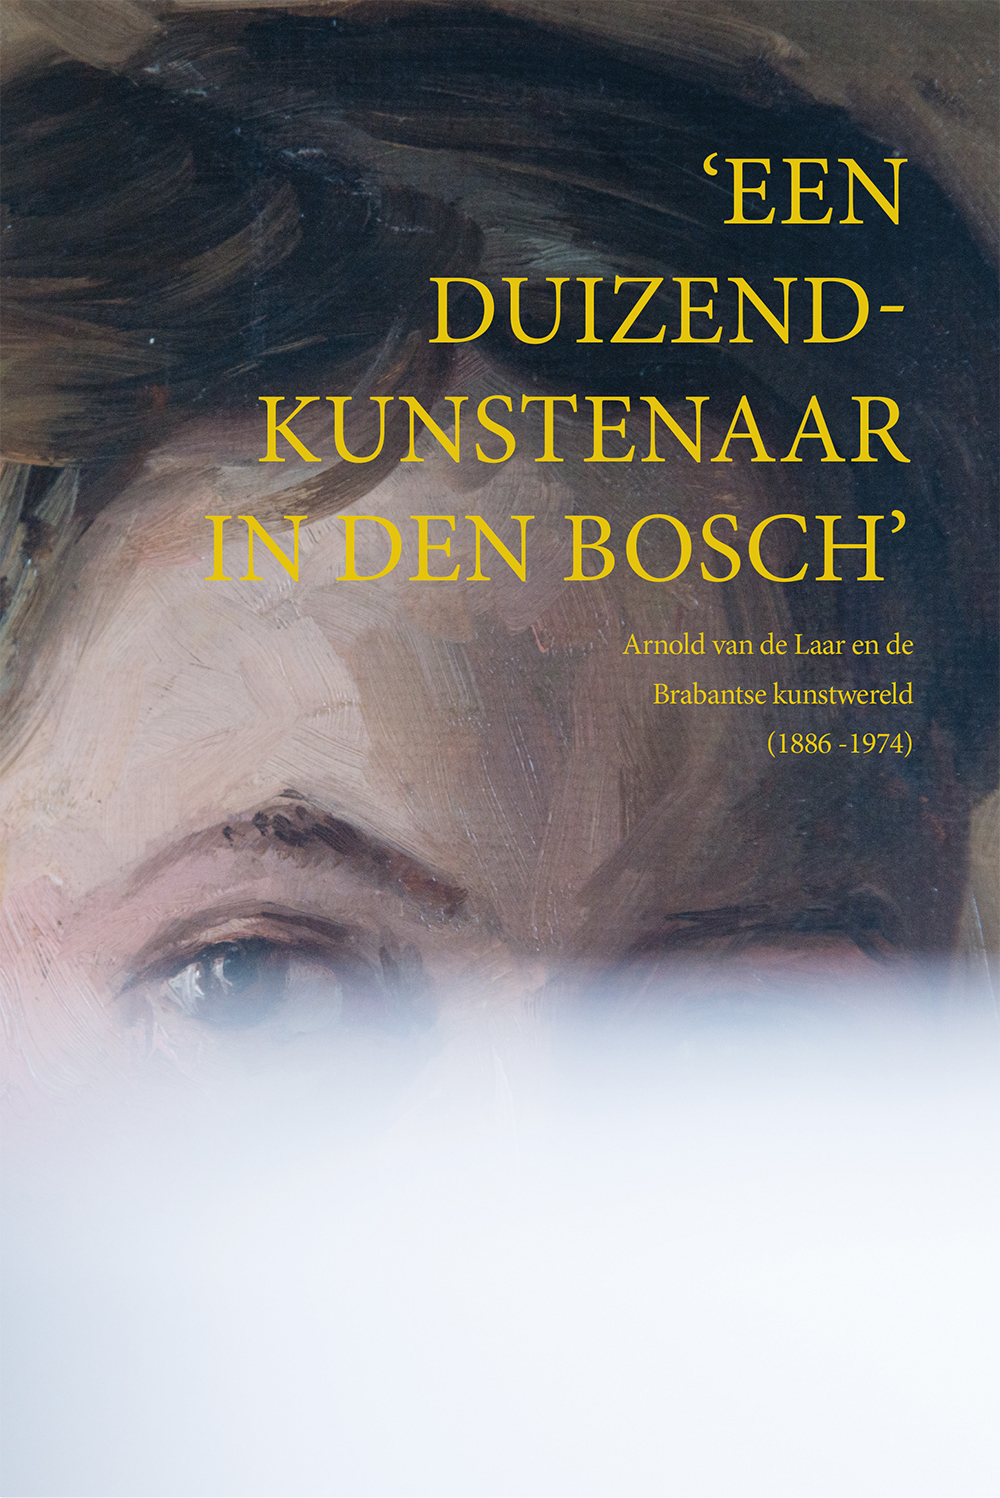 Duizend kunstenaar in Den Bosch